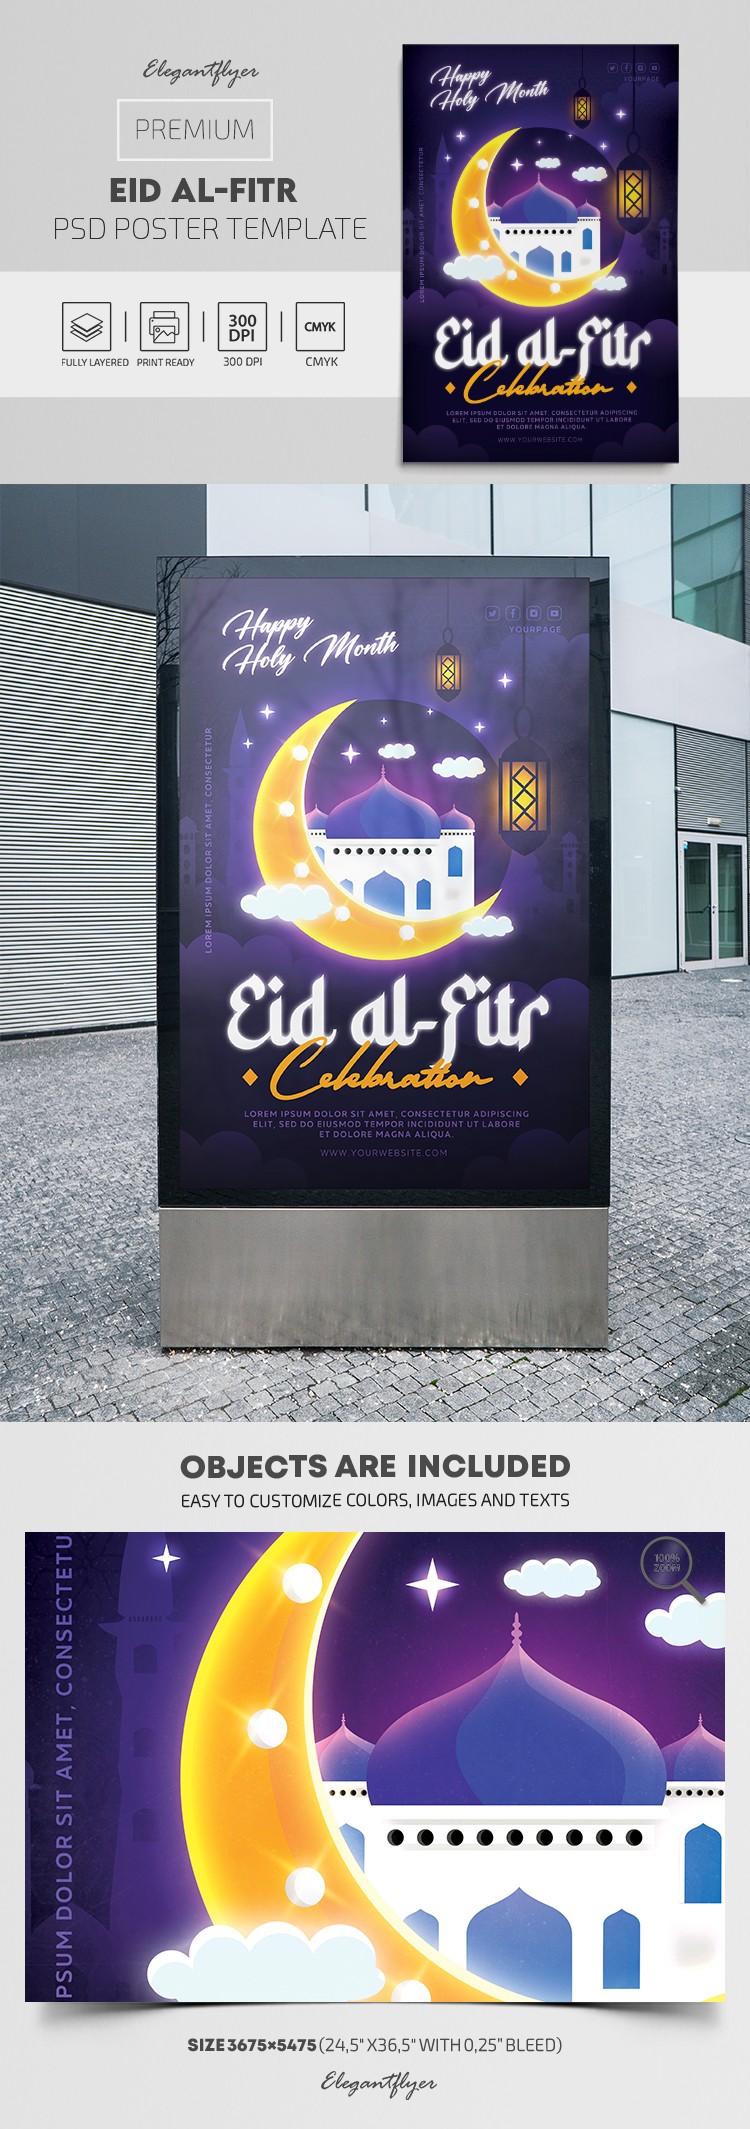 Eid Al-Fitr Poster by ElegantFlyer